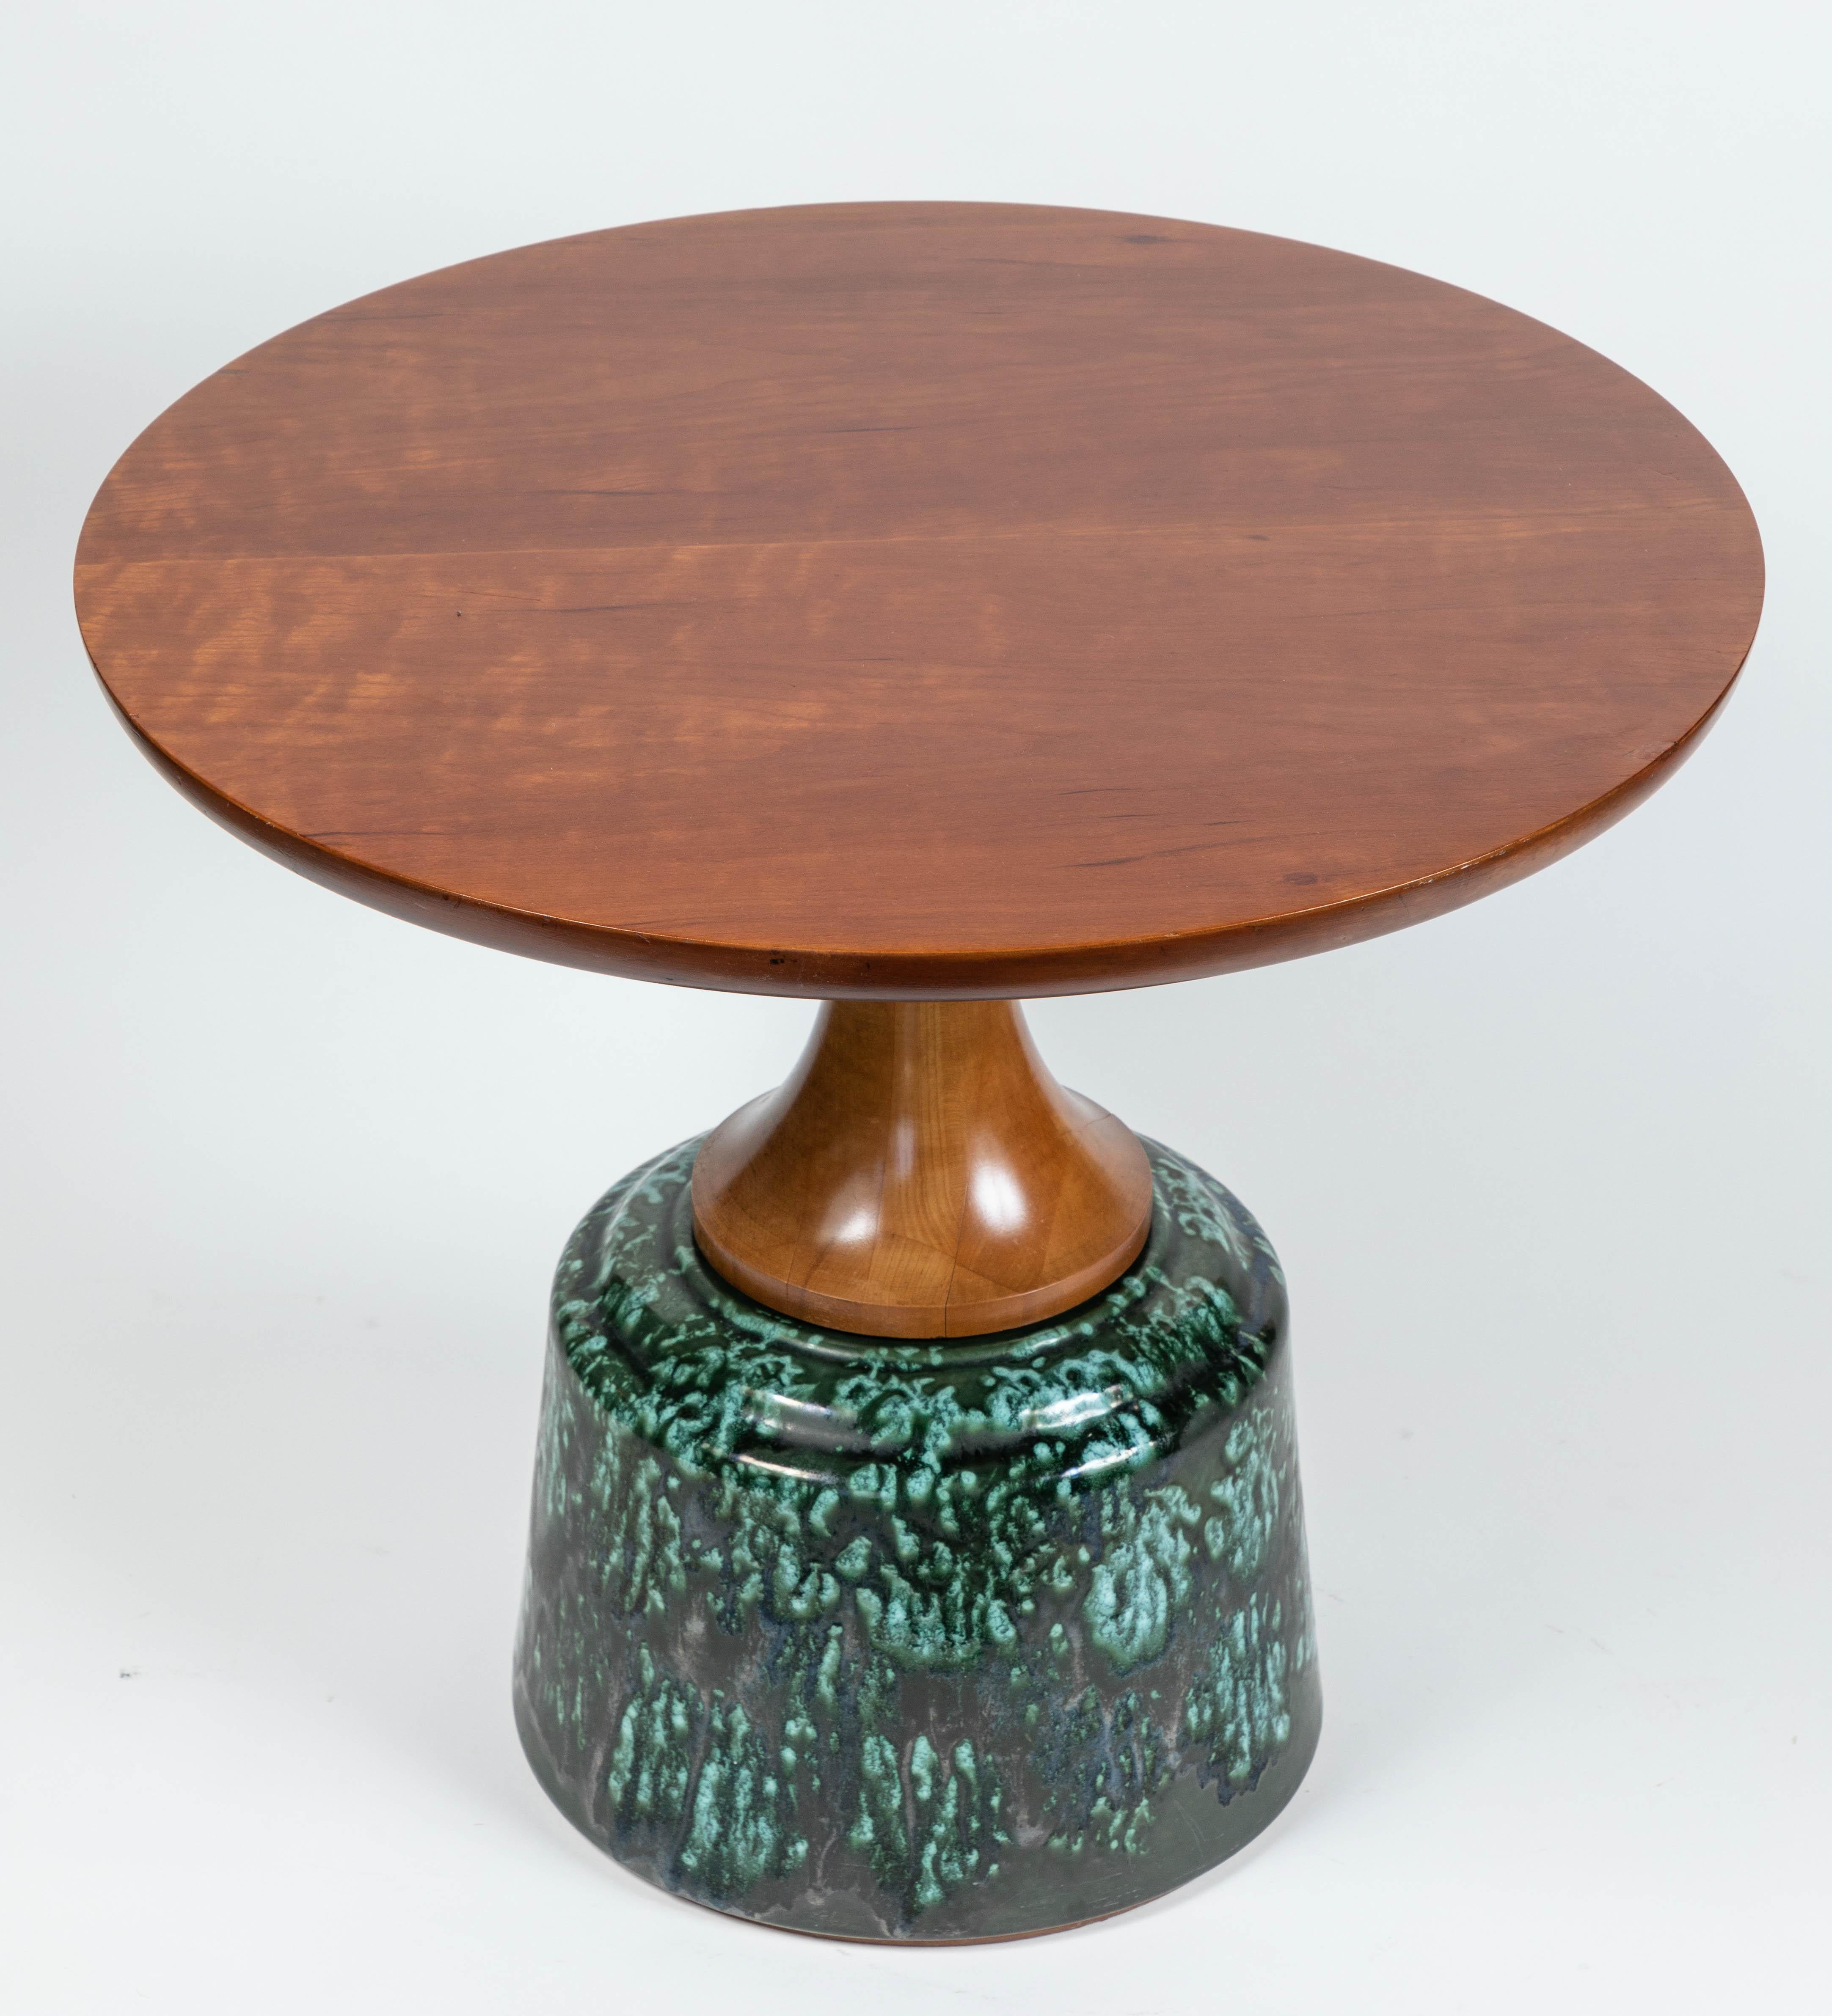 Vintage John Van Koert Occasional Table by Drexel 1